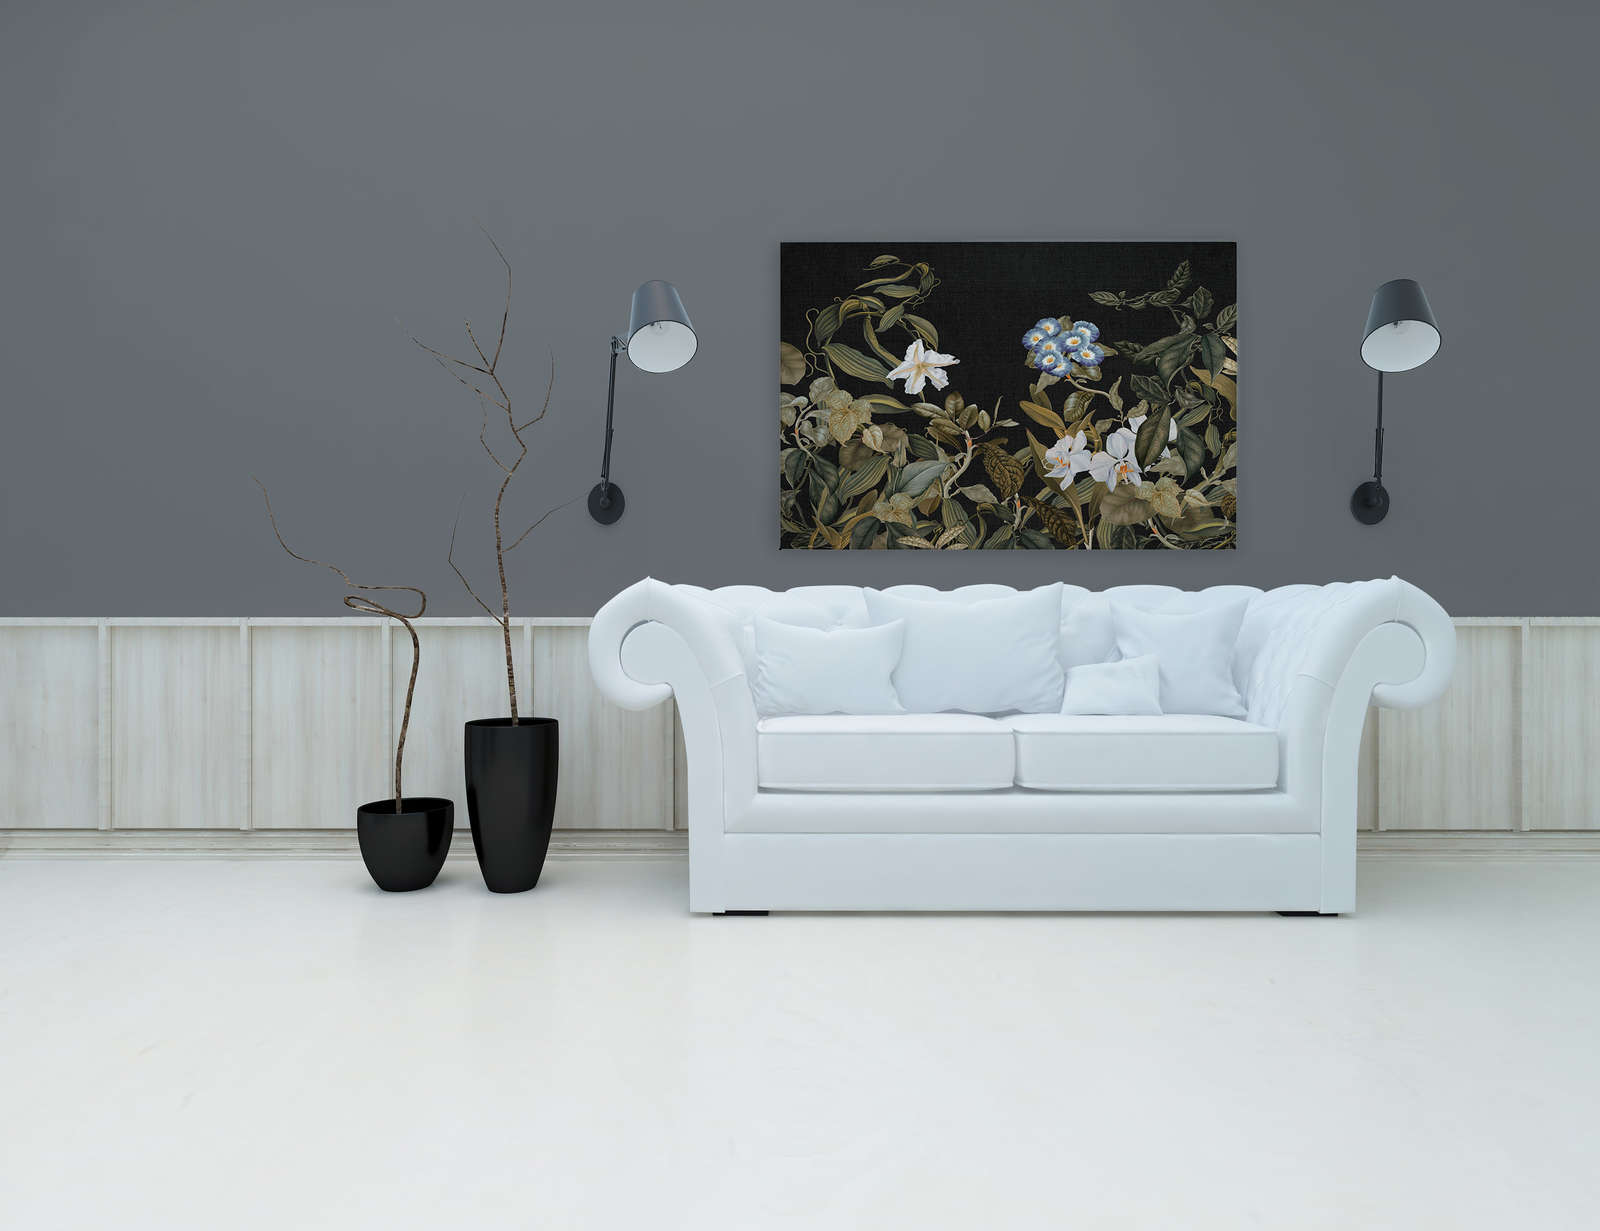             Botanical Leinwandbild mit Orchideen & Blätter-Motiv – 1,20 m x 0,80 m
        